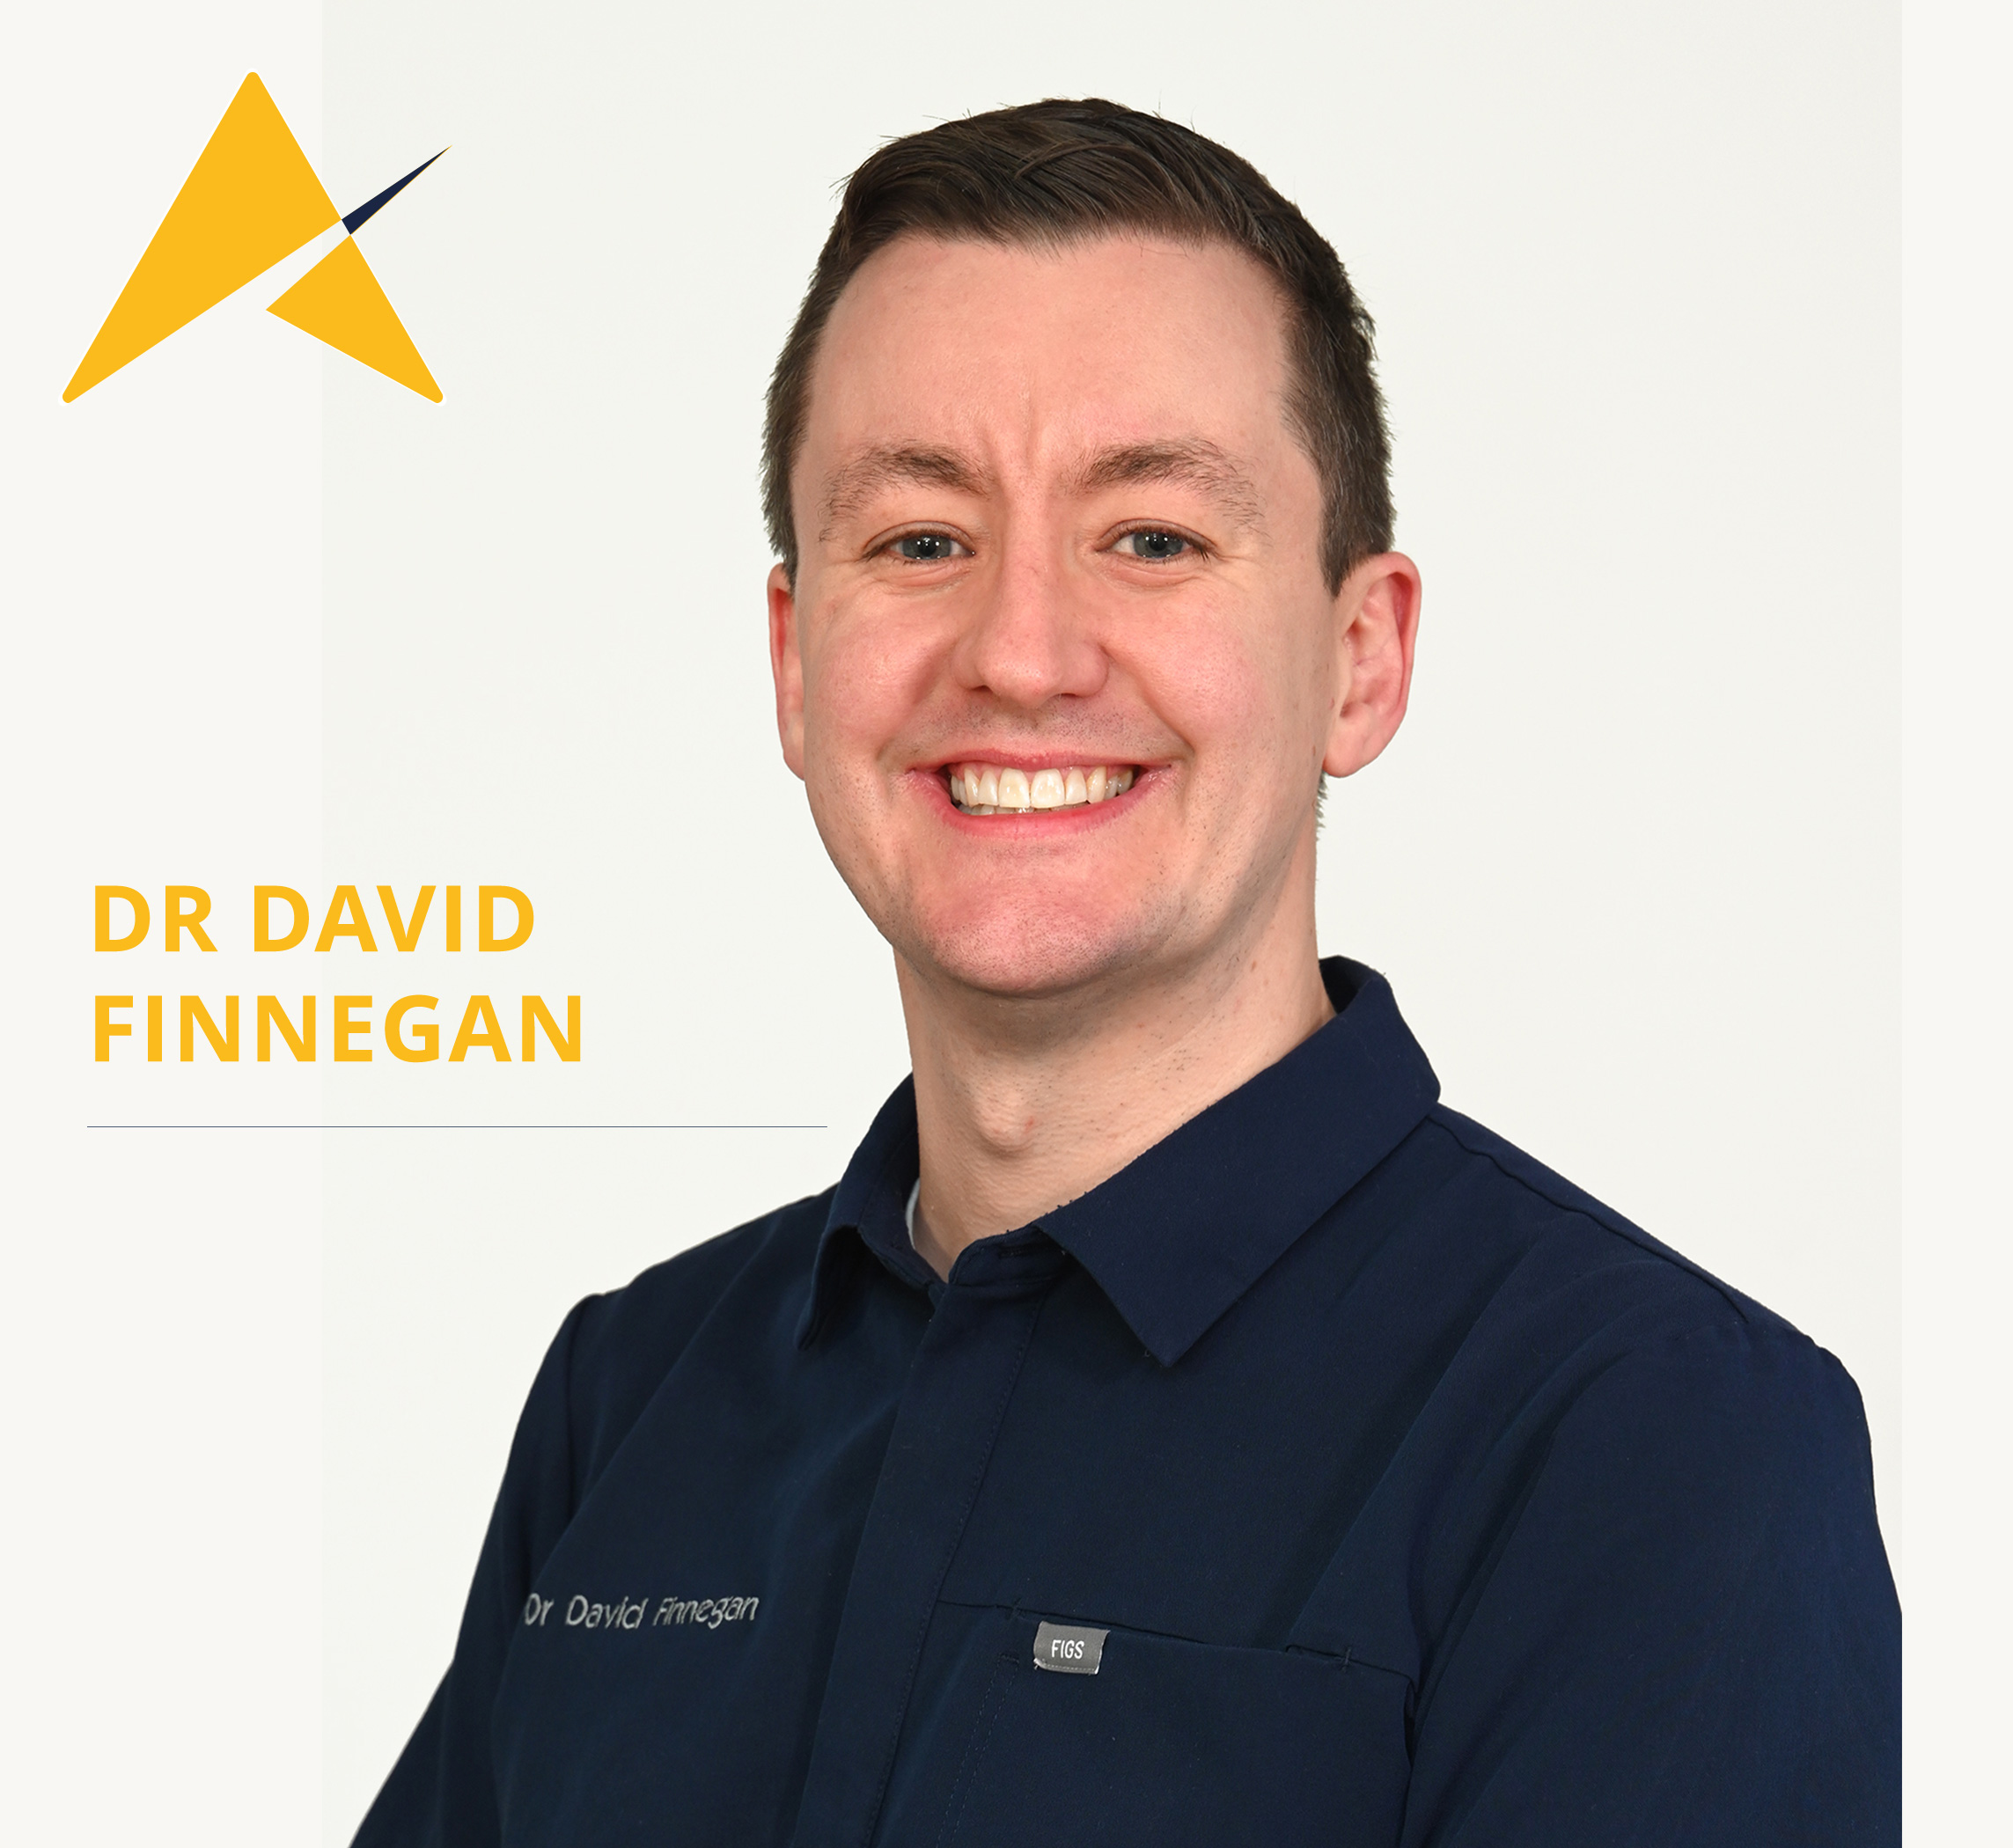 Dr David Finnegan